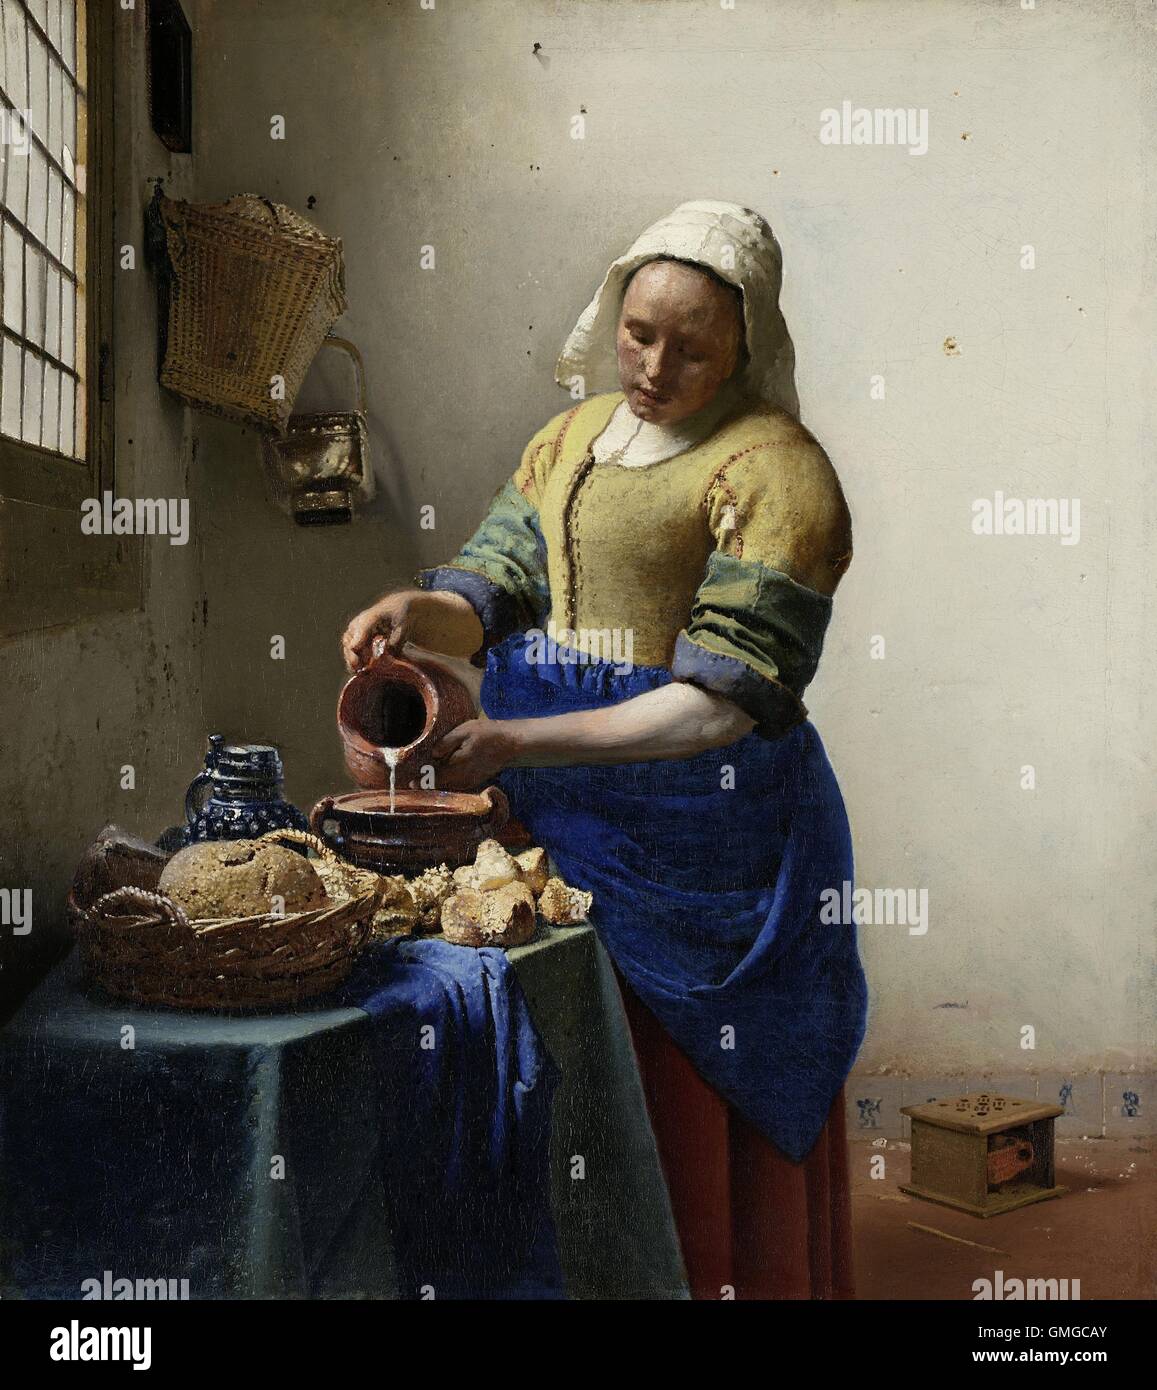 Das Milchmädchen von Johannes Vermeer, 1660, niederländische Malerei, Öl auf Leinwand. Von Licht aus einem Fenster beleuchtet, ergießt sich eine junge Frau Stockfoto